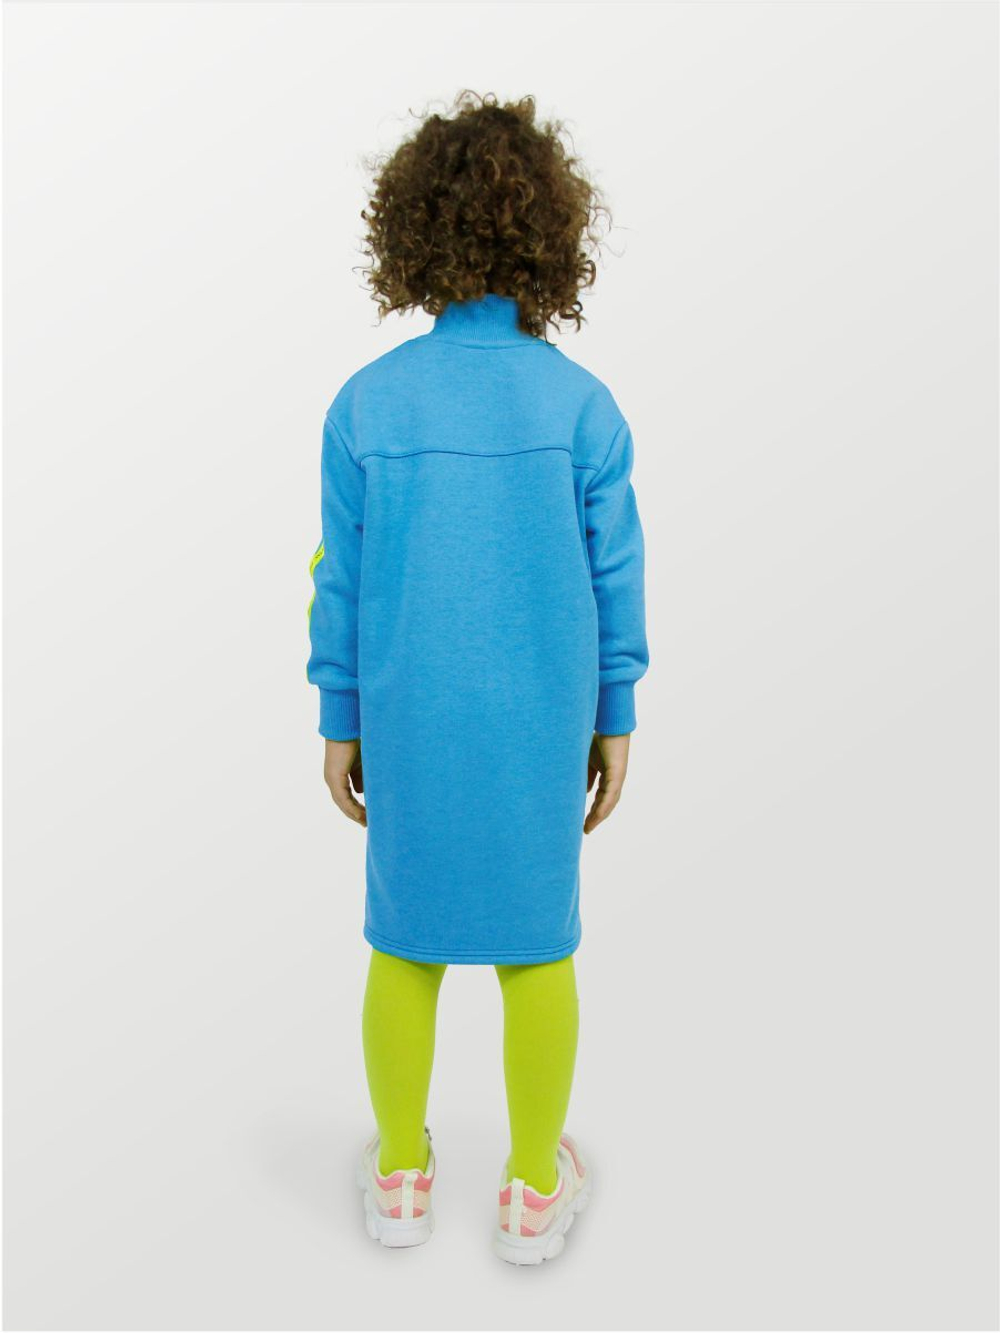 Платье для девочки, модель №1, рост 116 см, голубое